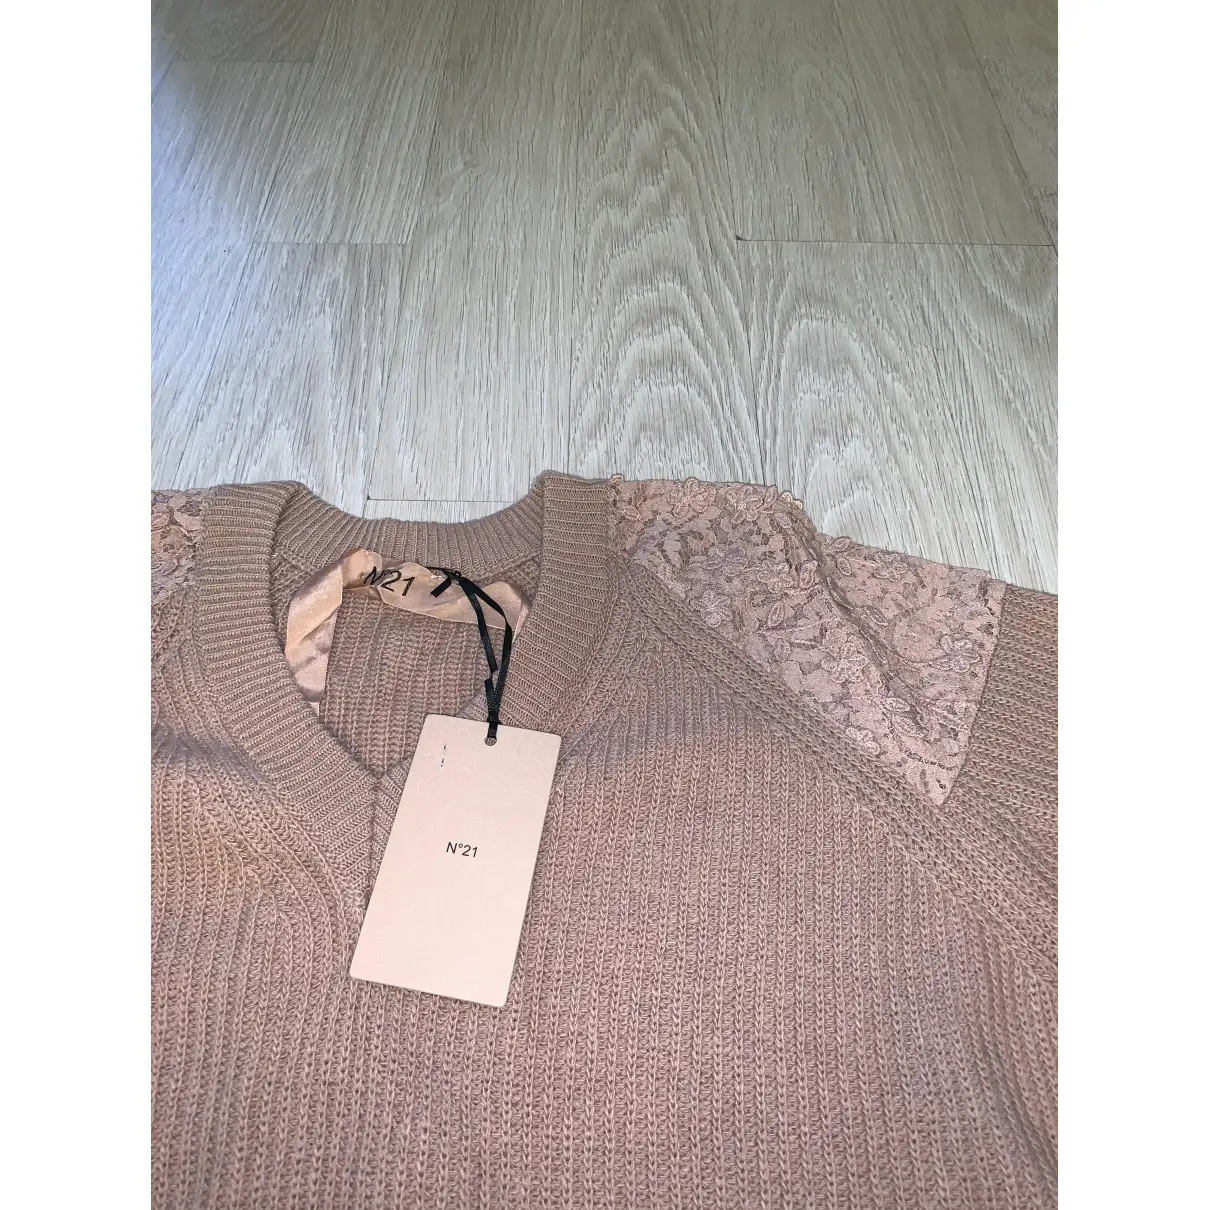 Buy N°21 Wool jumper online